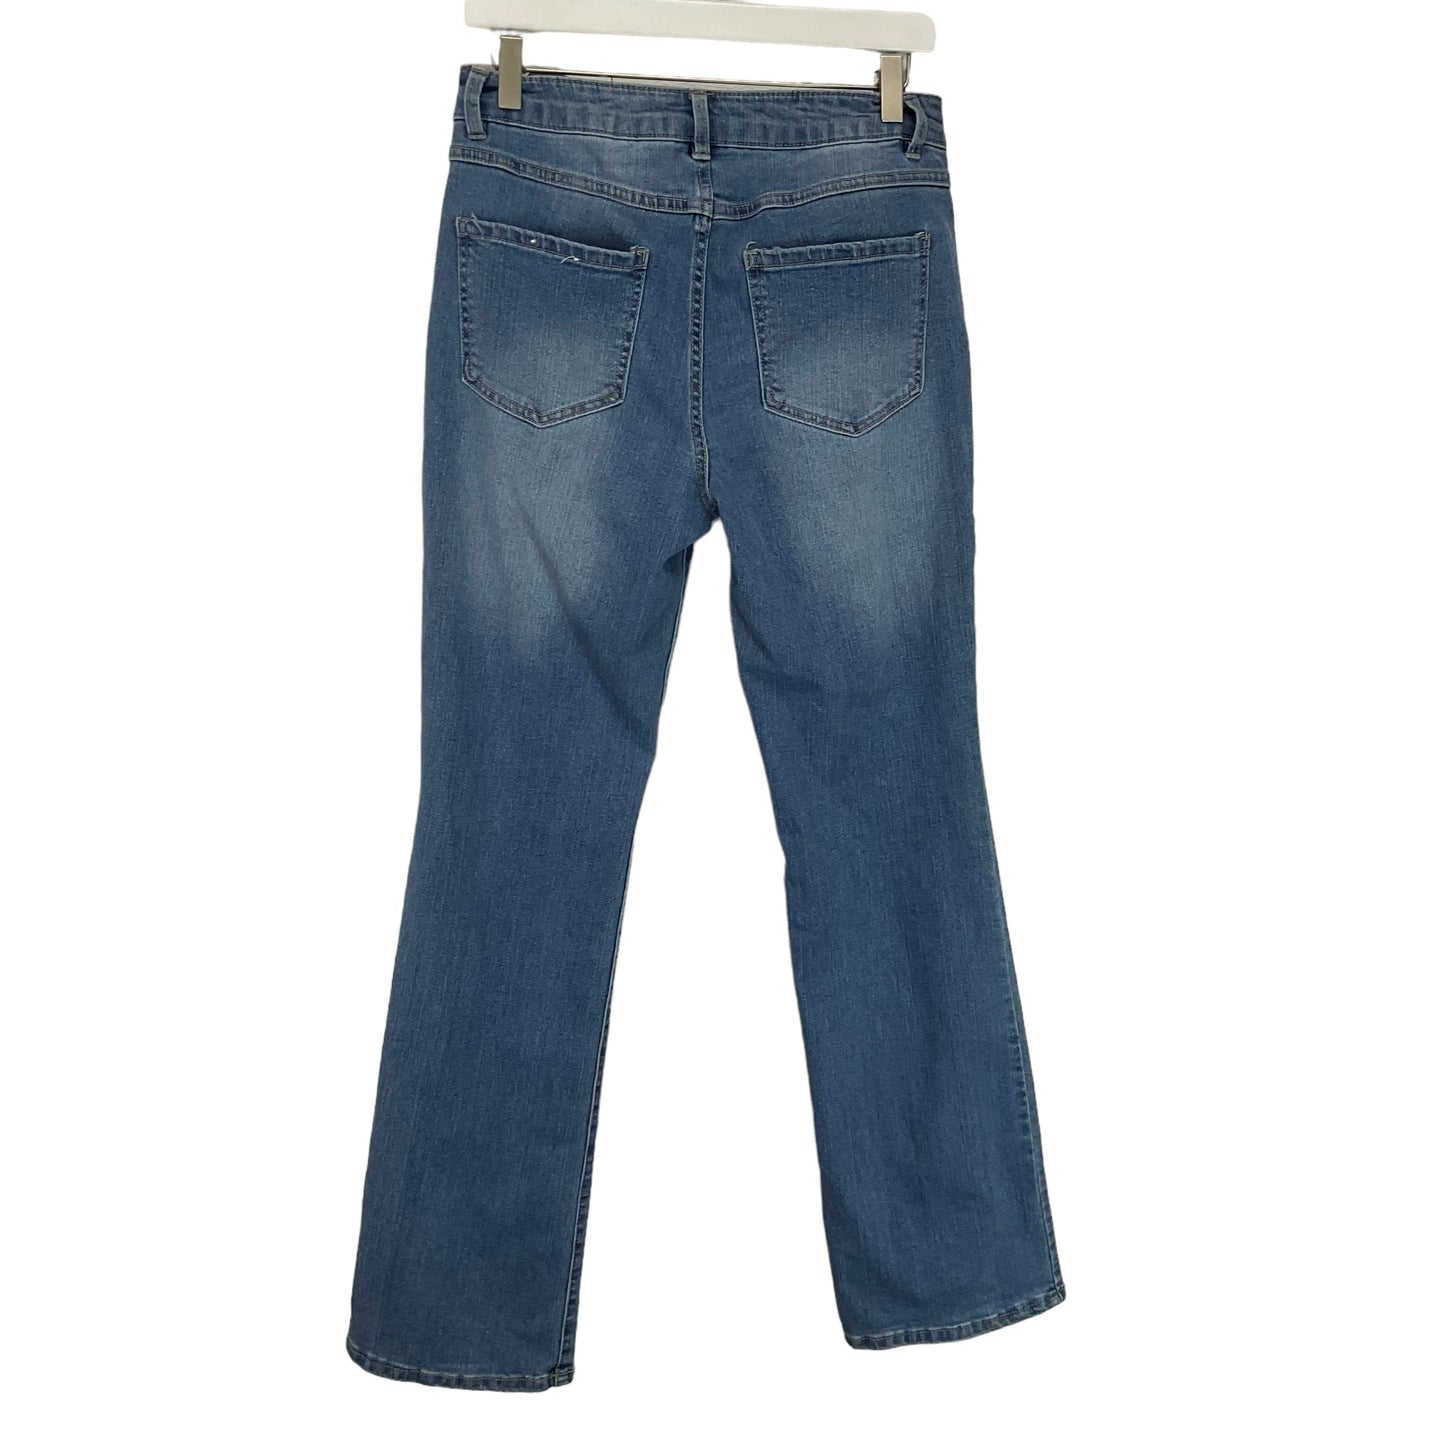 Blue Denim Jeans Boot Cut D Jeans, Size 8